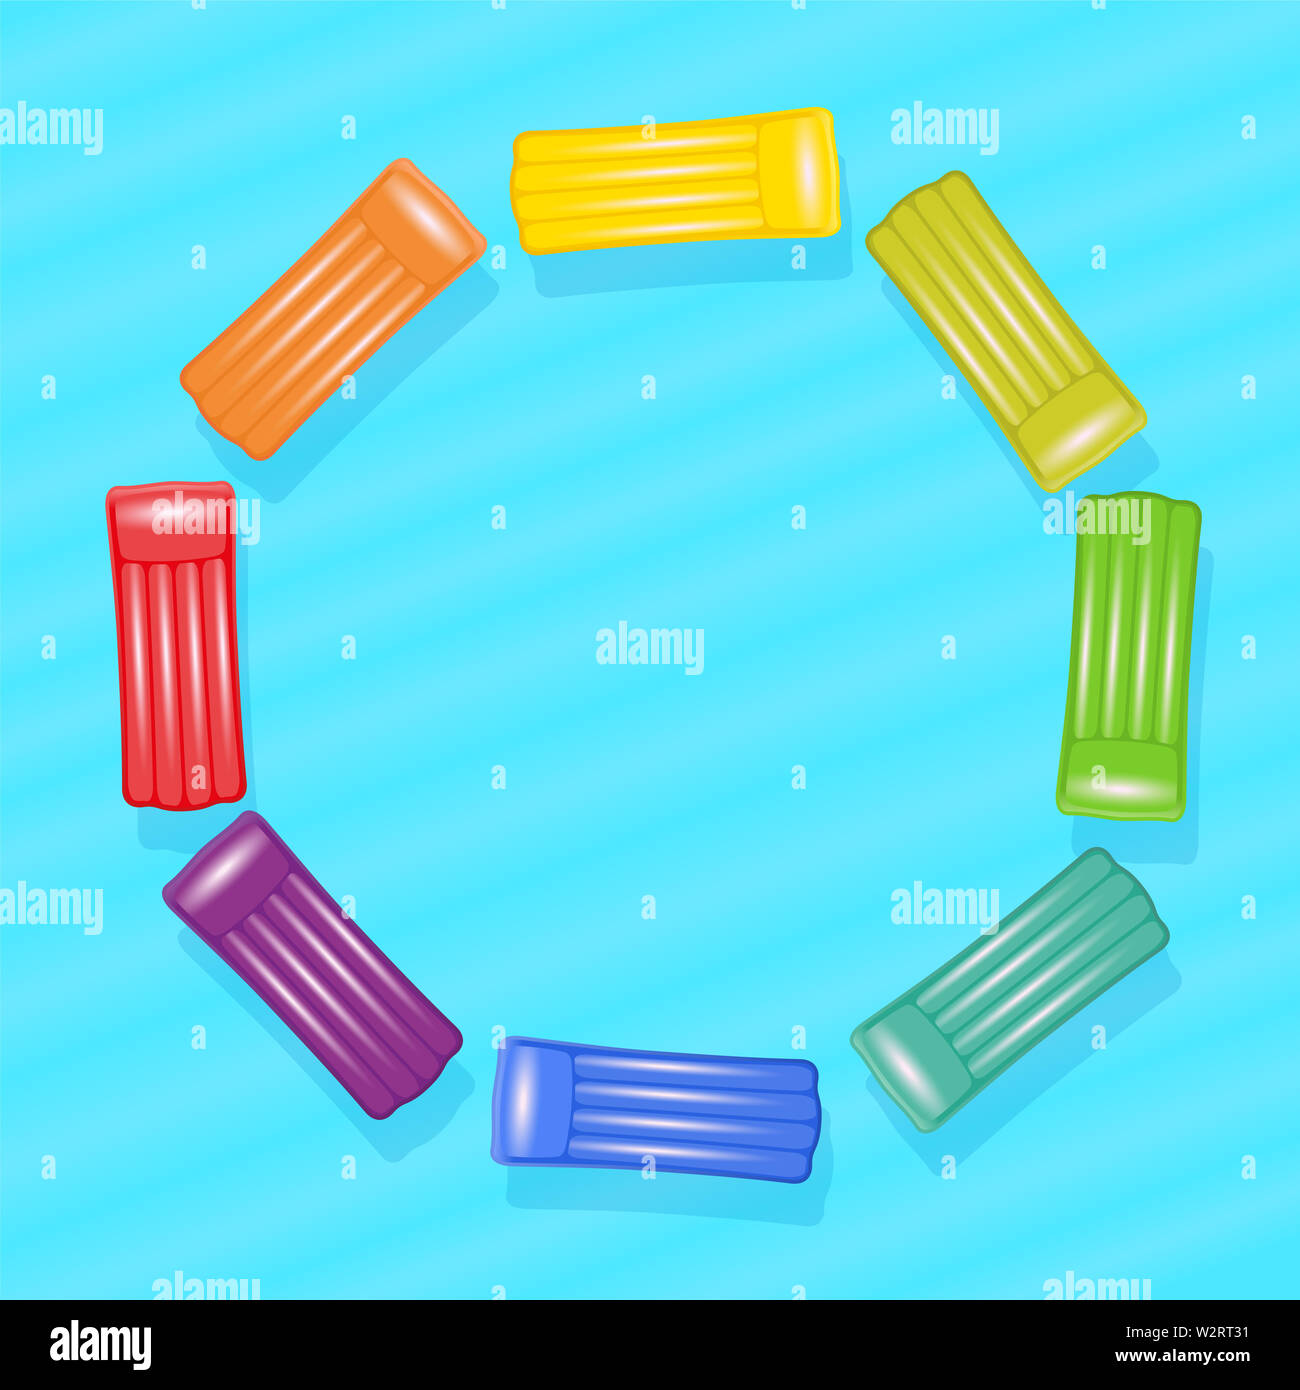 Luftmatratzen im Pool. Das farbenfrohe, Matten bilden einen regenbogenfarbenen Kreis - Abbildung auf blauen Pool Wasser Hintergrund. Stockfoto